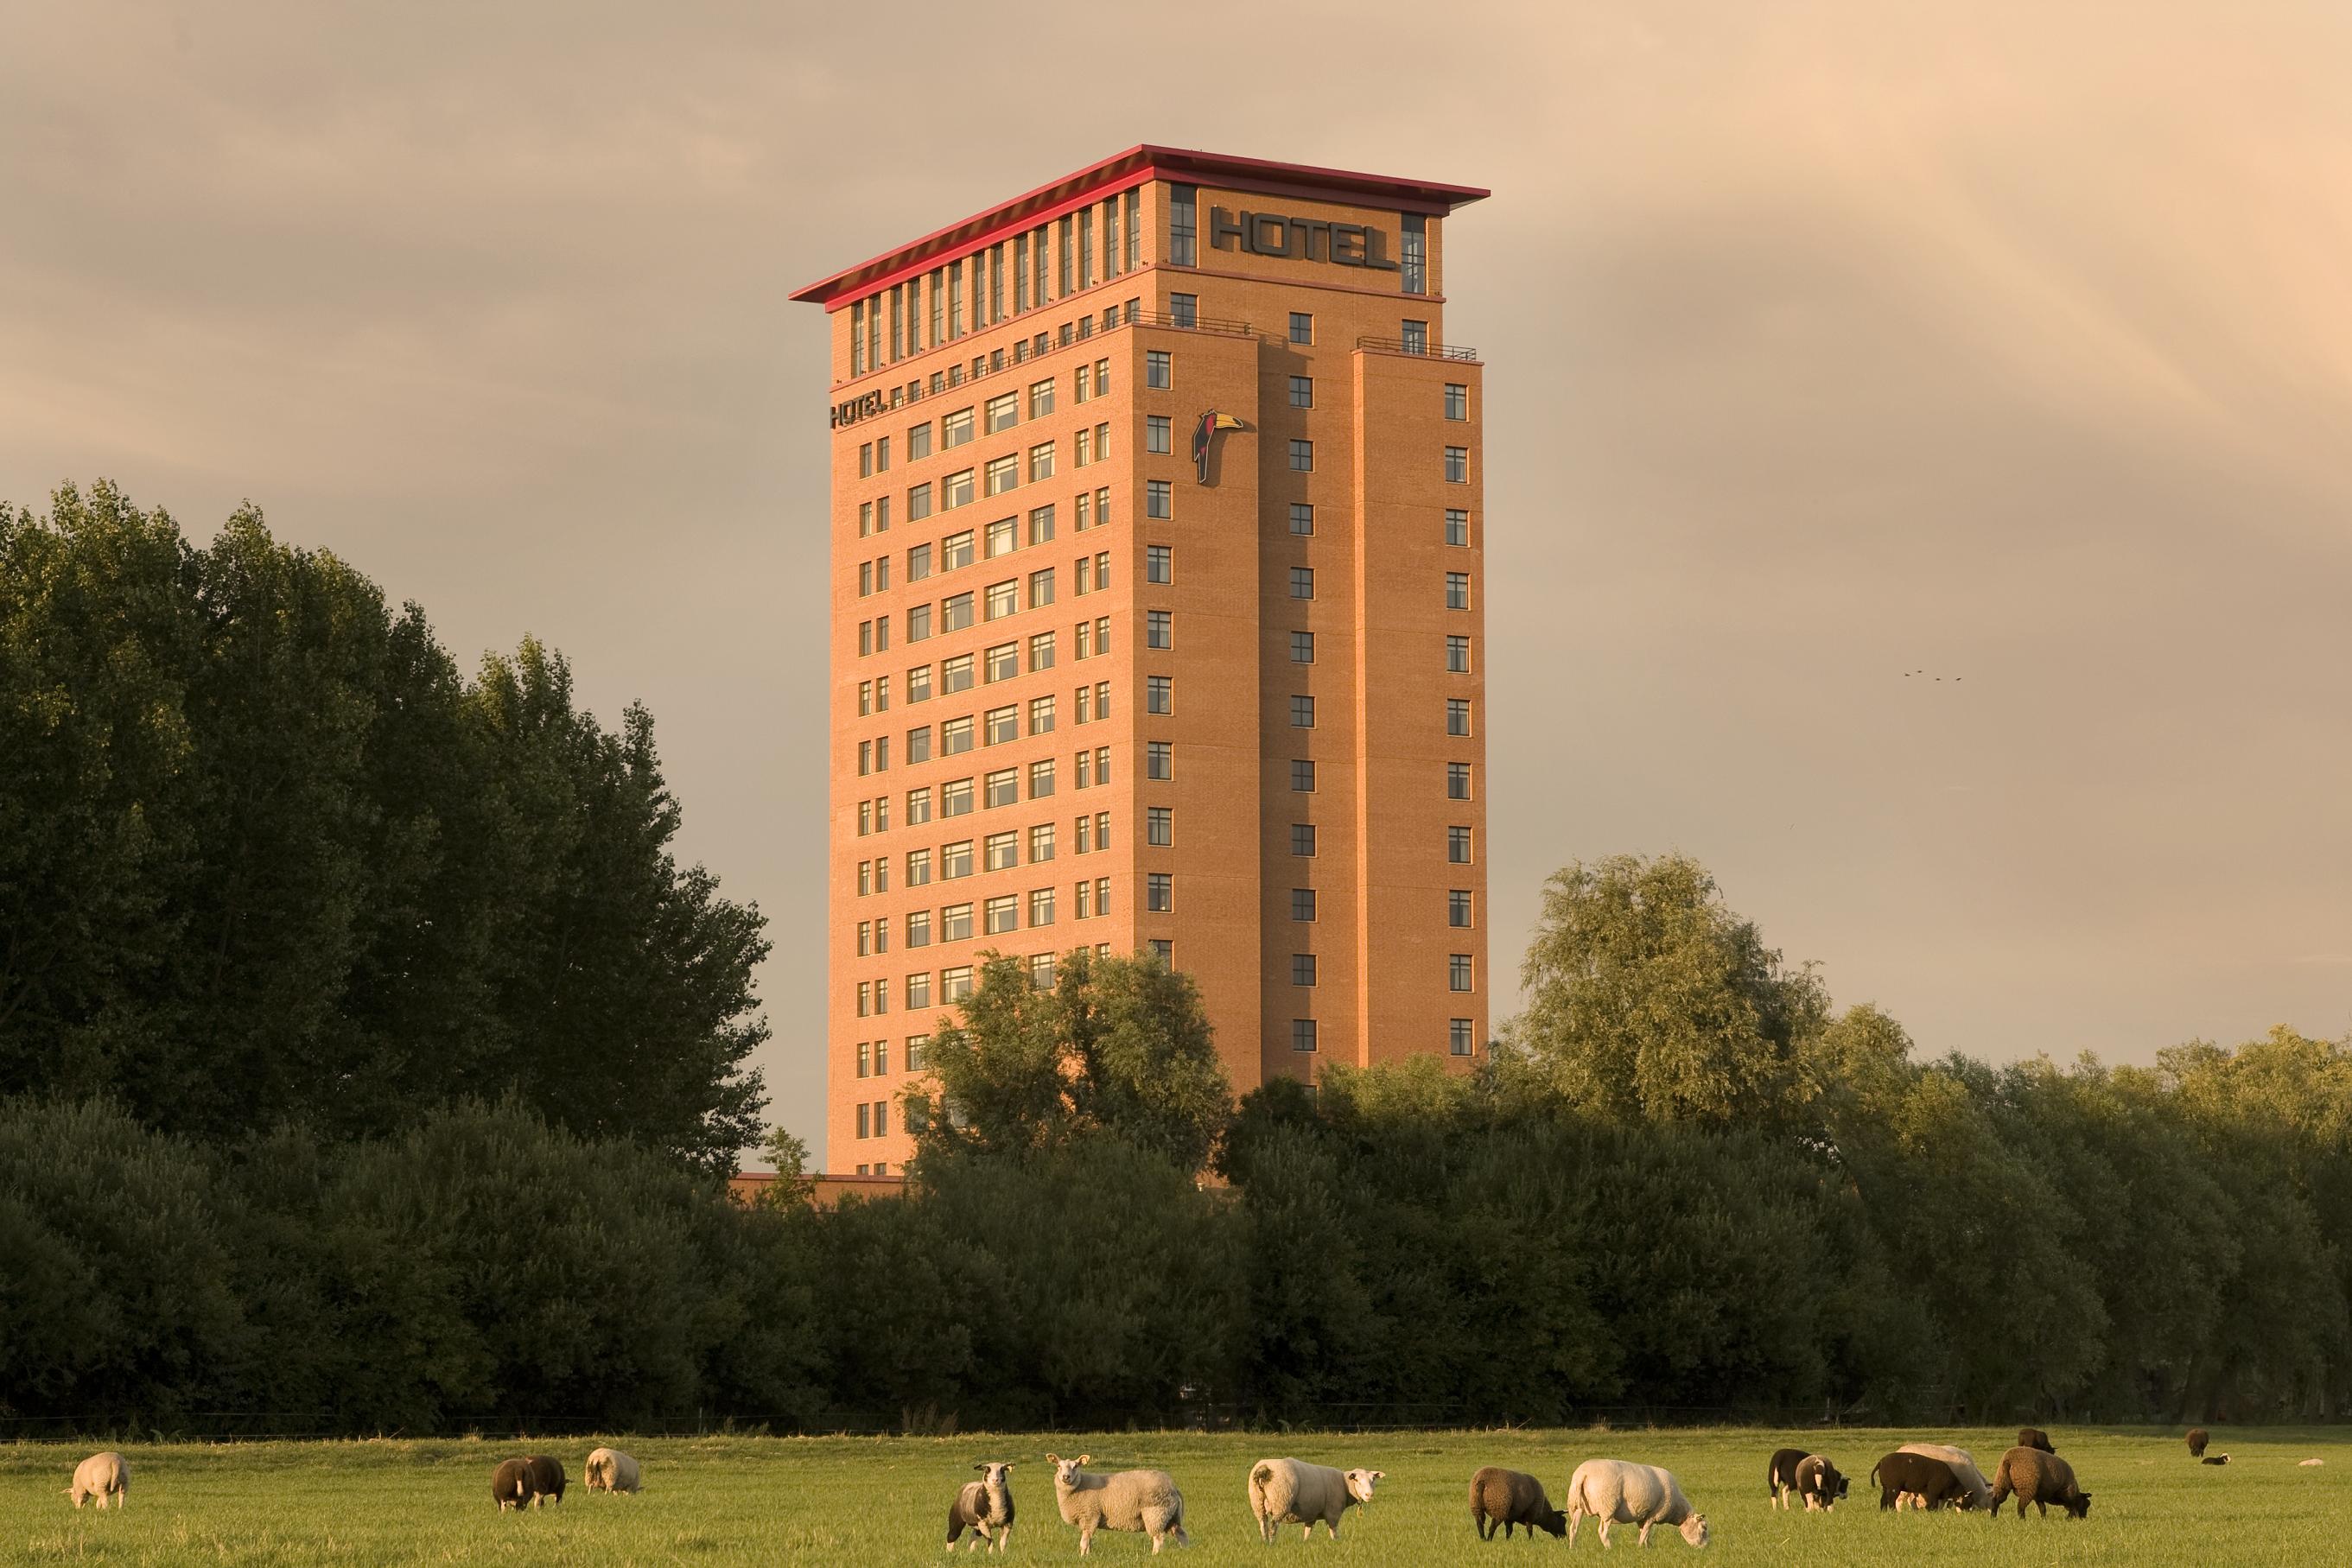 Hampshire Hotel - Plaza Groningen